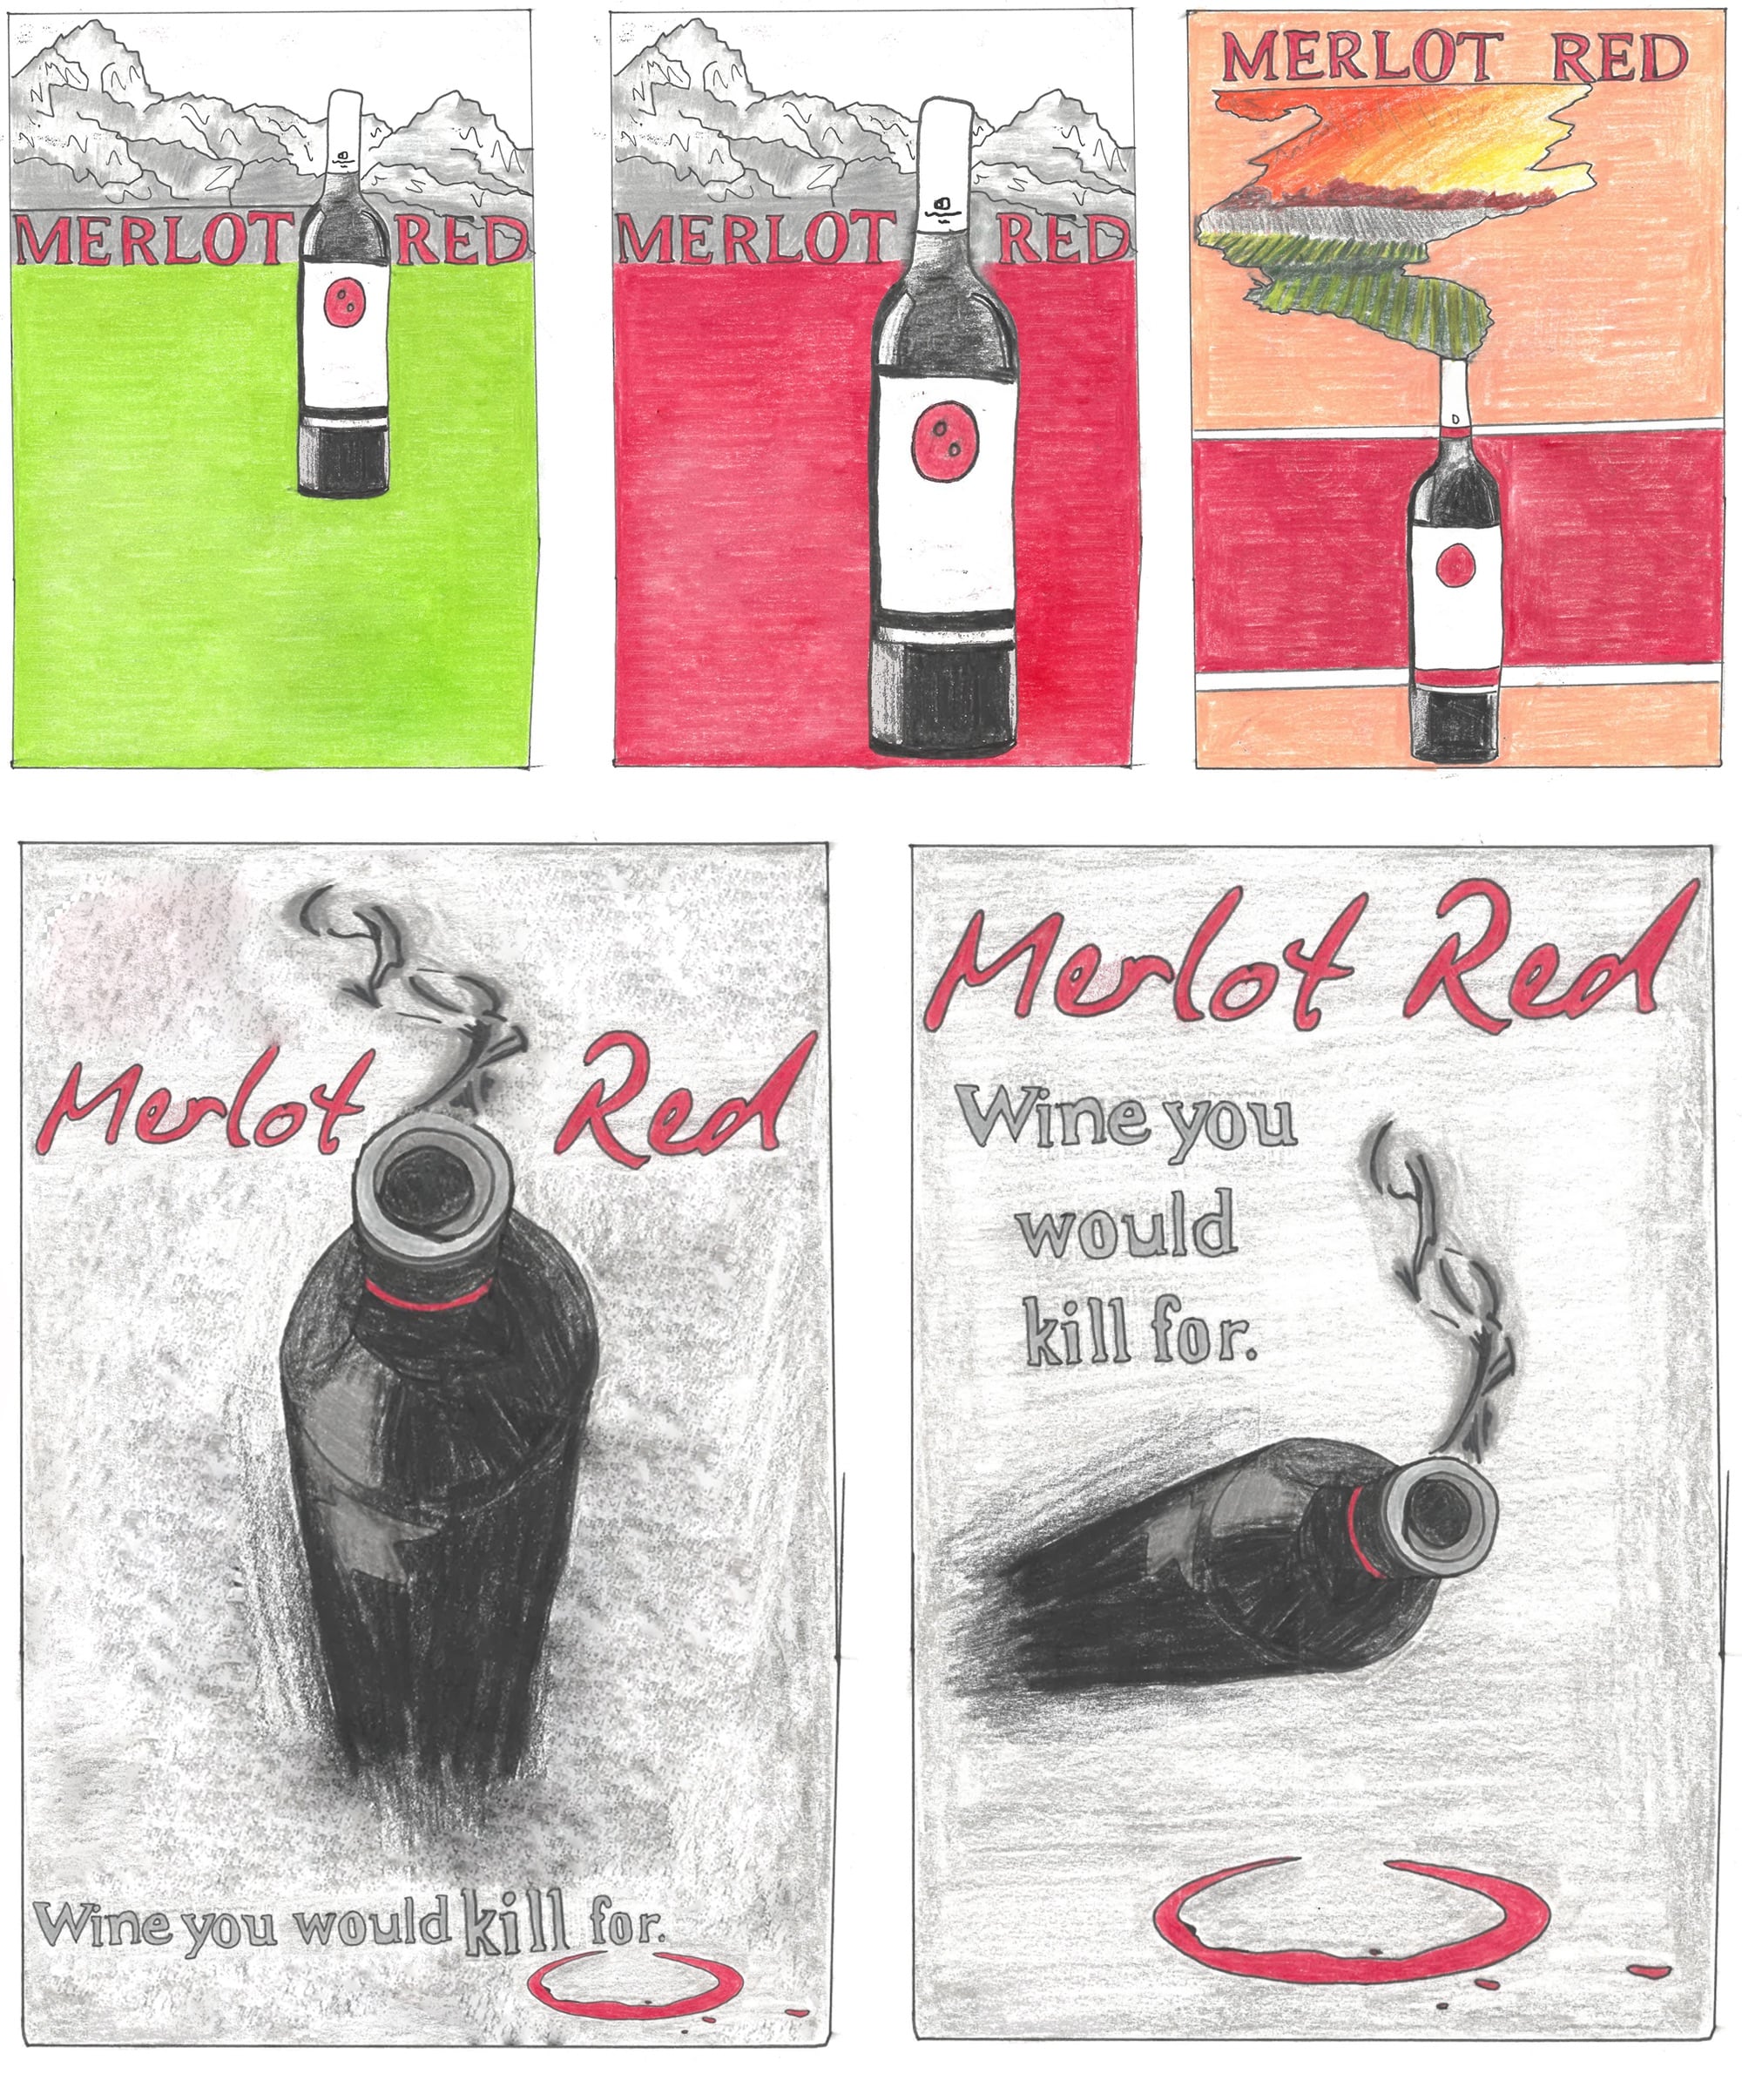 Merlot Red Magazine Sketch Front